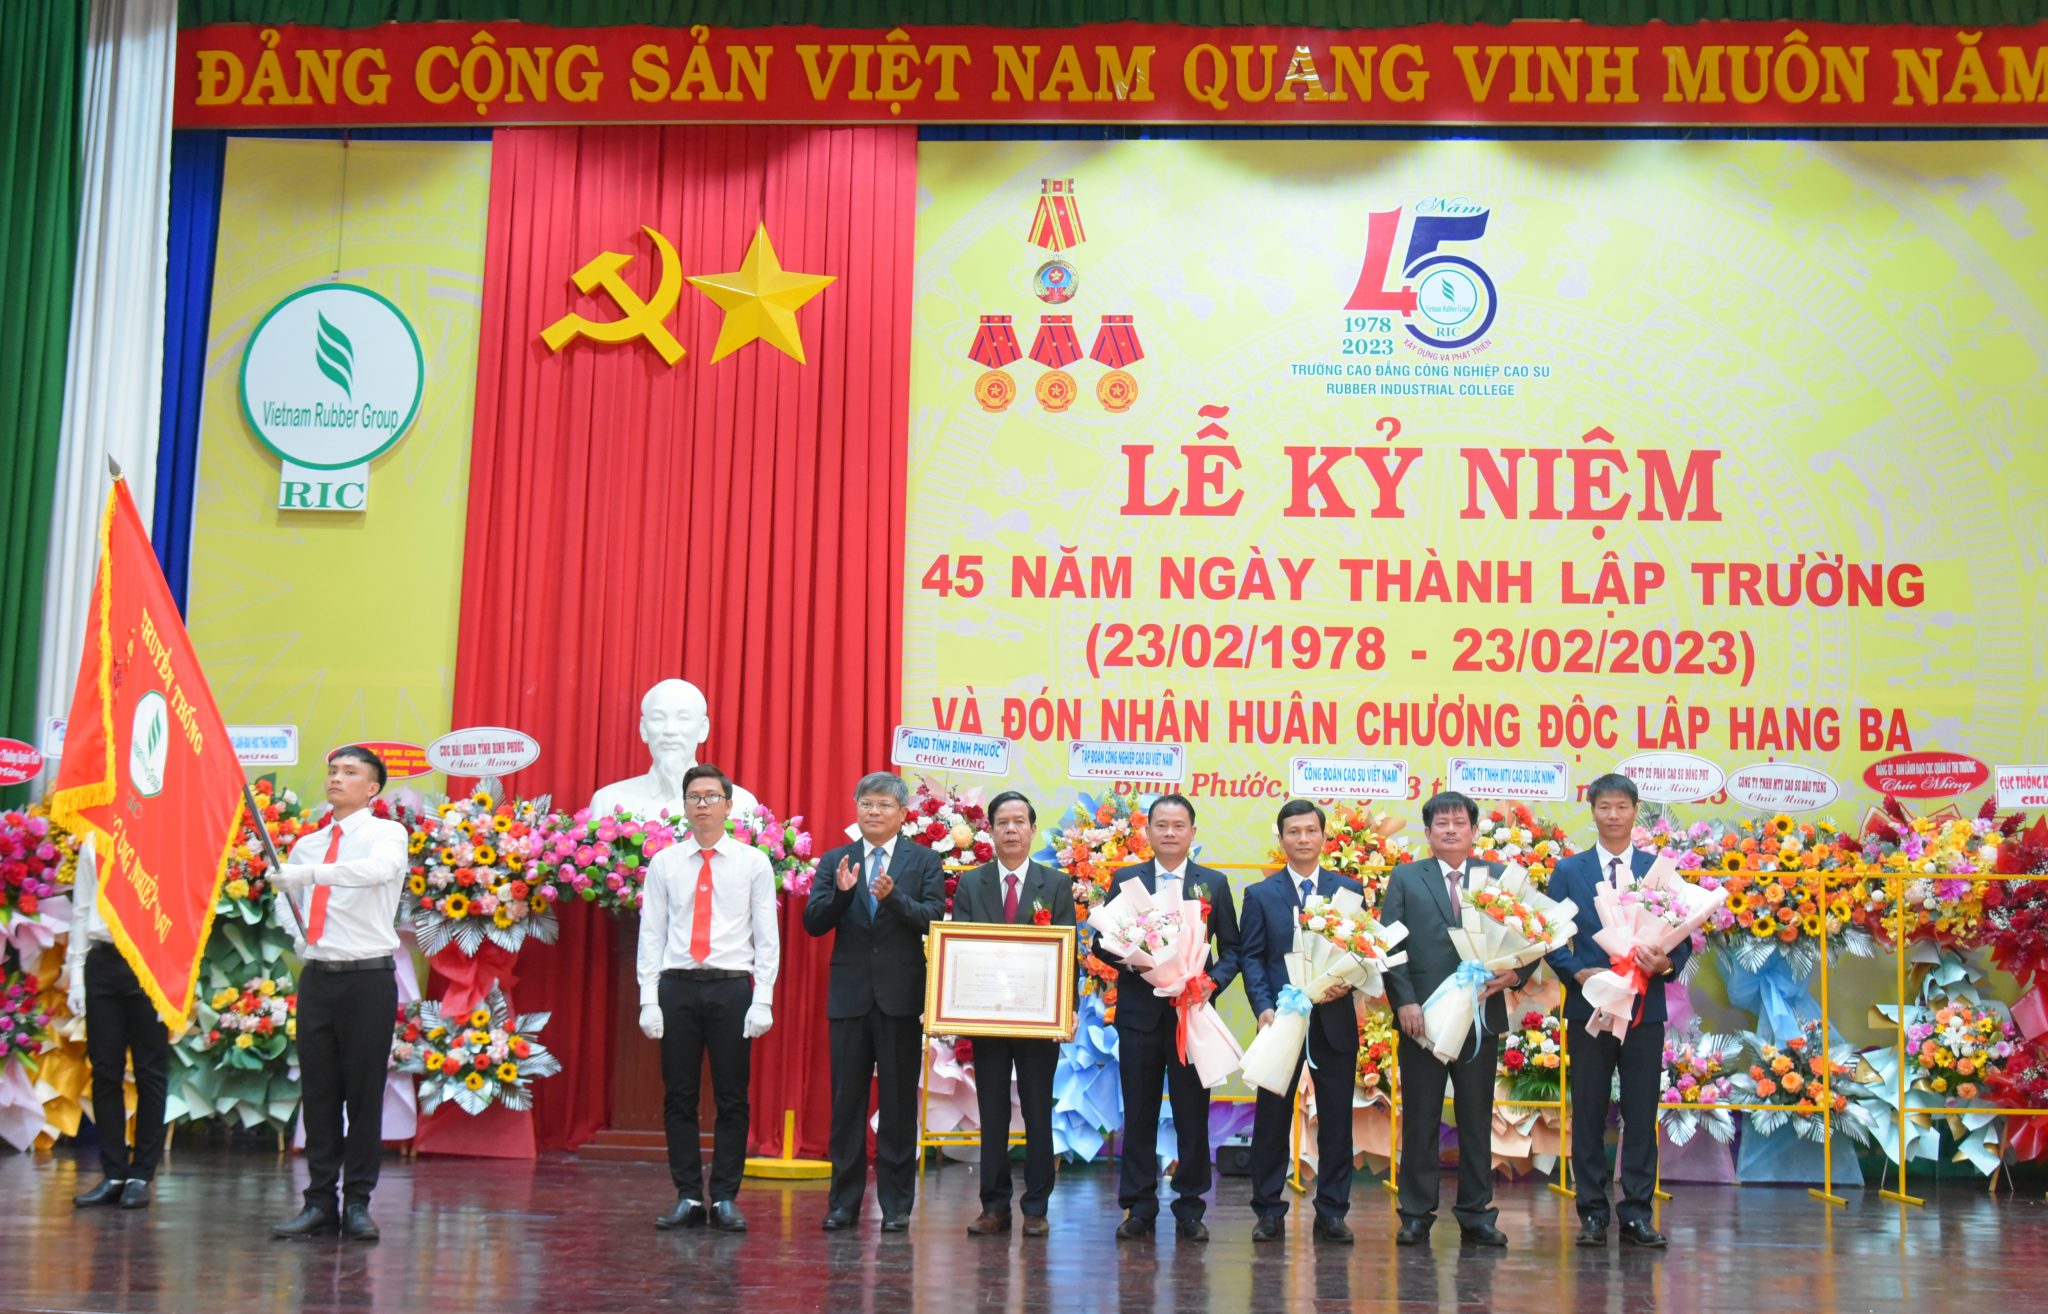 Trường vinh dự được nhận Huân chương Độc lập hạng Ba nhân kỷ niệm 45 năm thành lập.